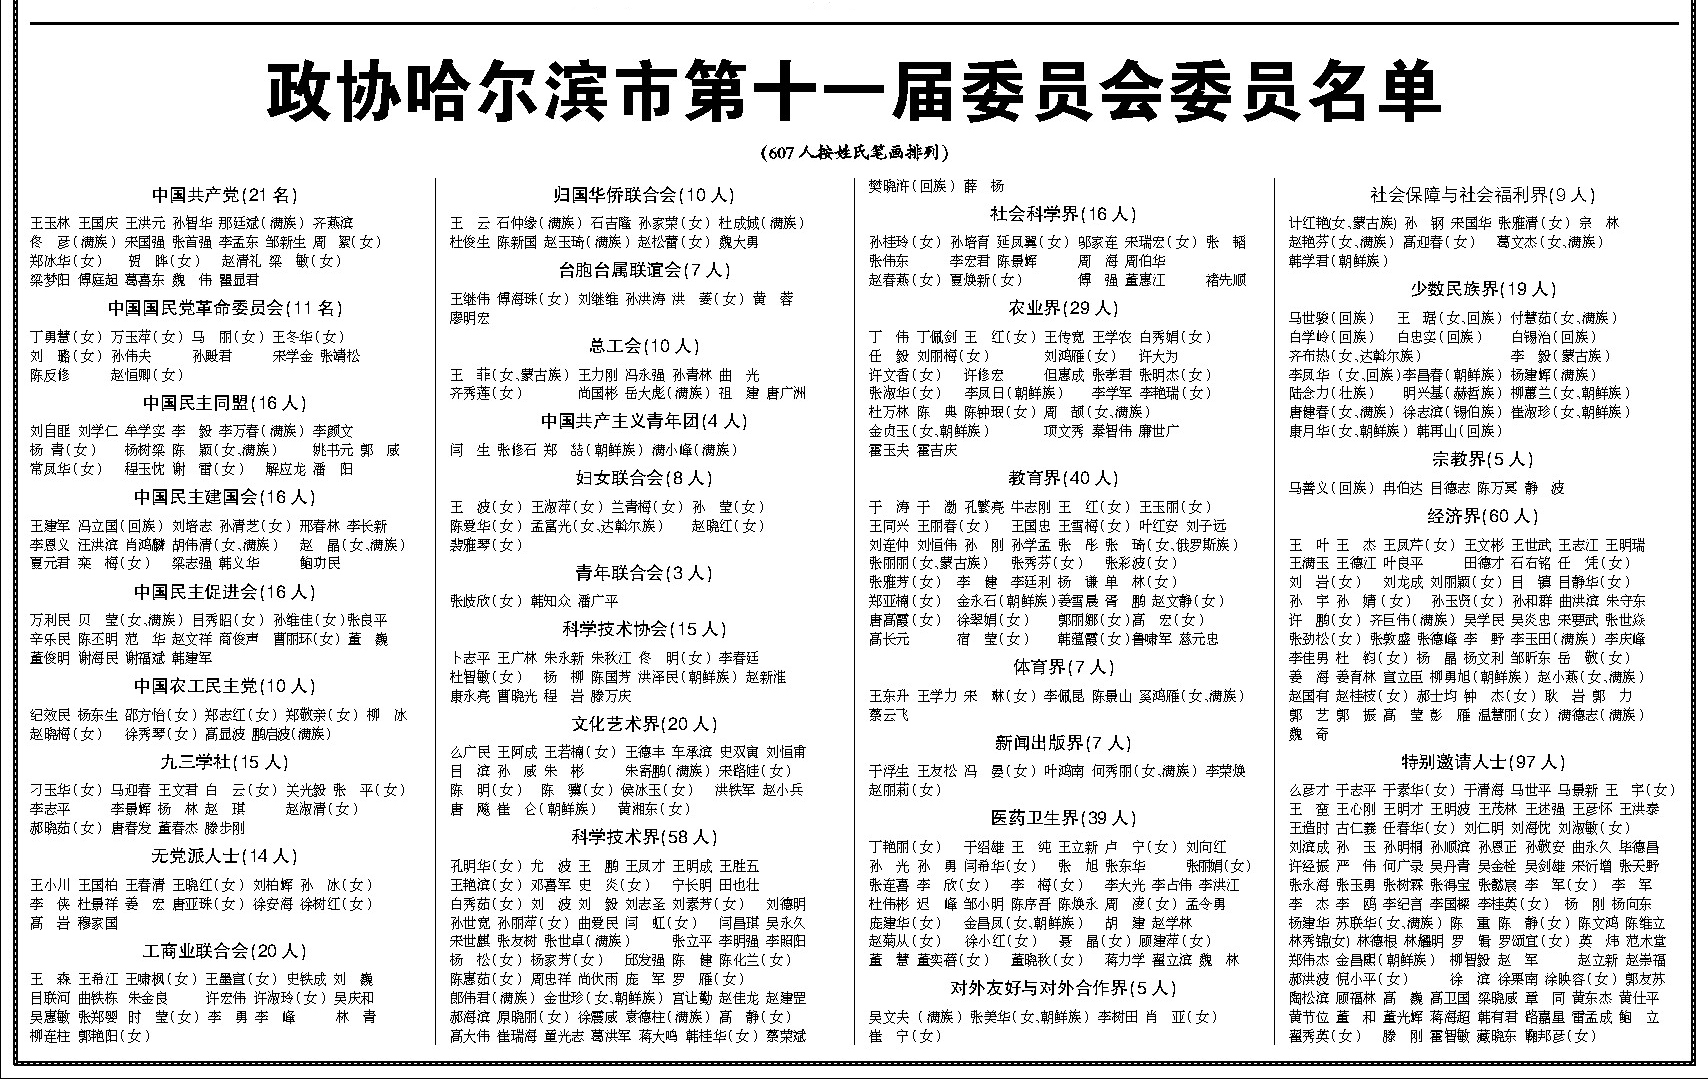 政协哈尔滨市第十一届委员会委员名单(图)